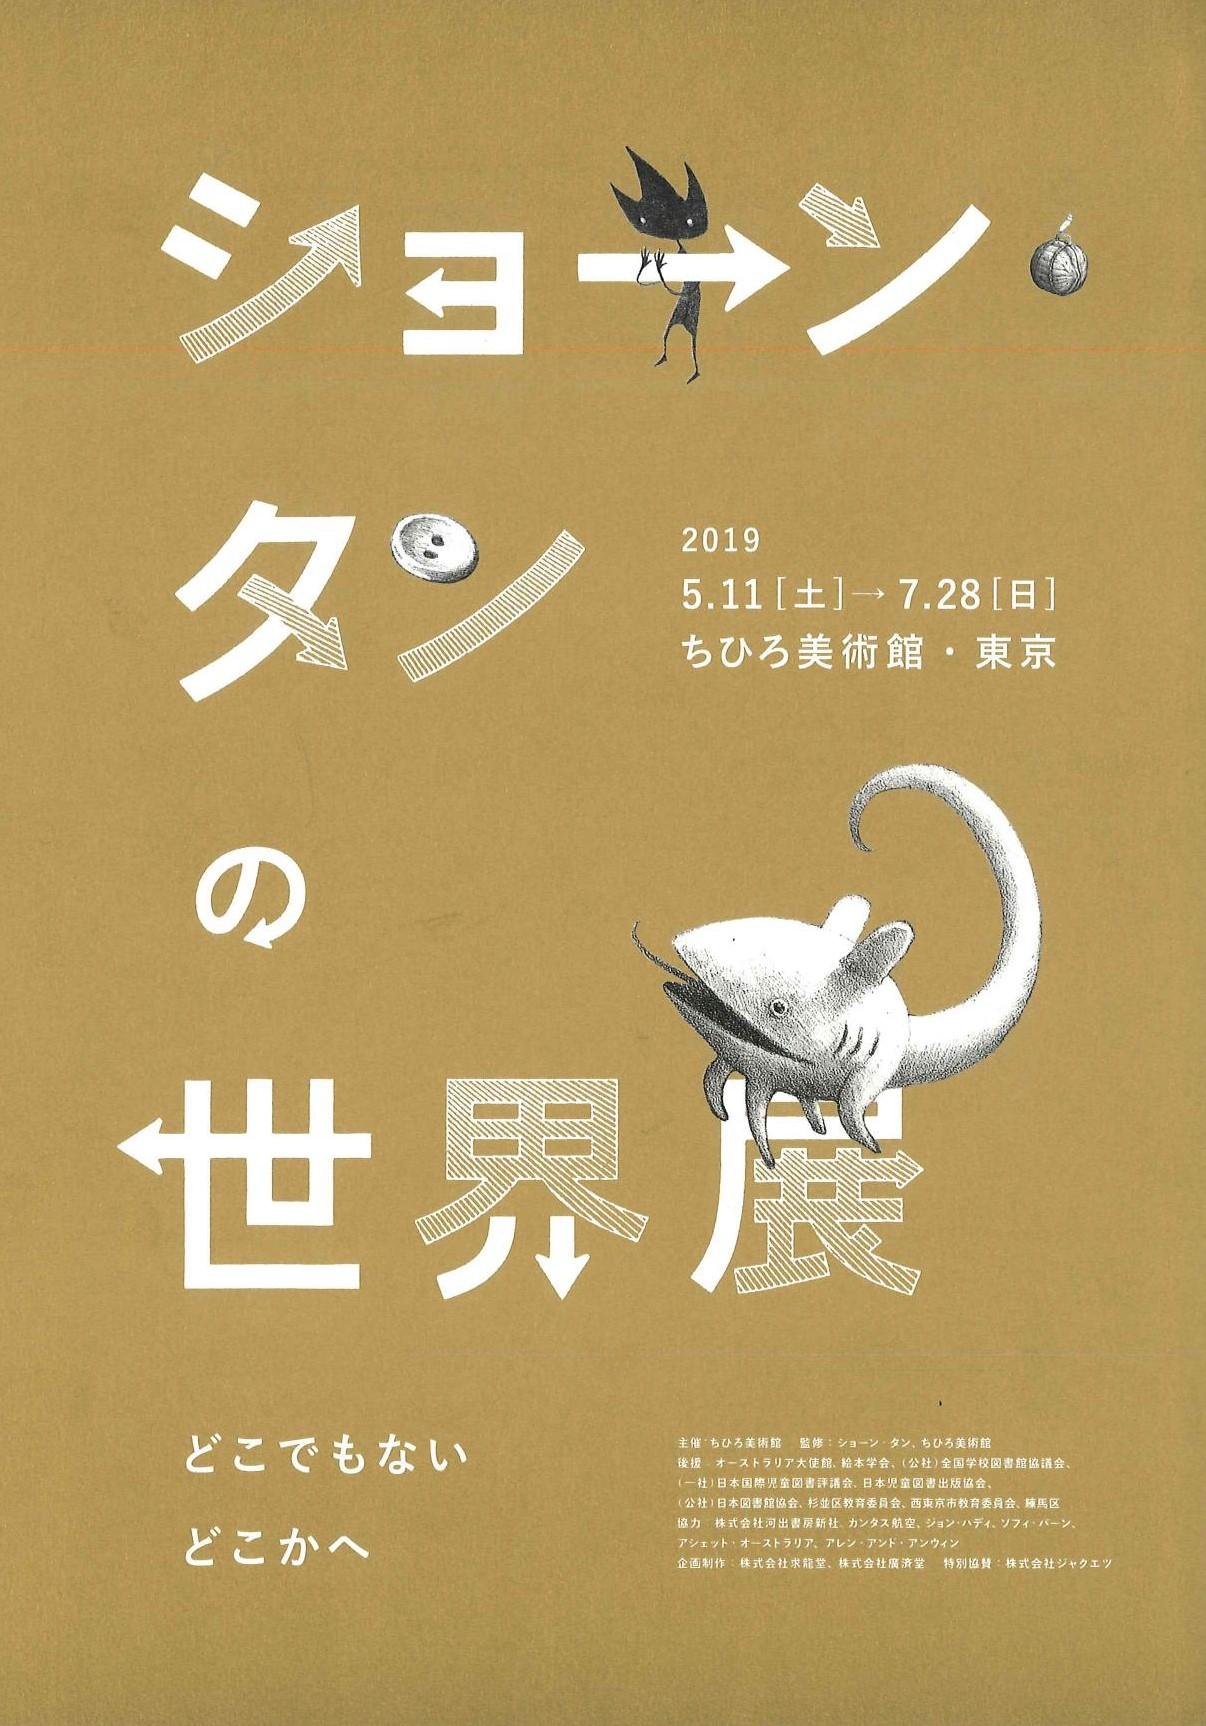 ちひろ美術館 東京 ショーン タンの世界展 イベント情報 とっておきの練馬